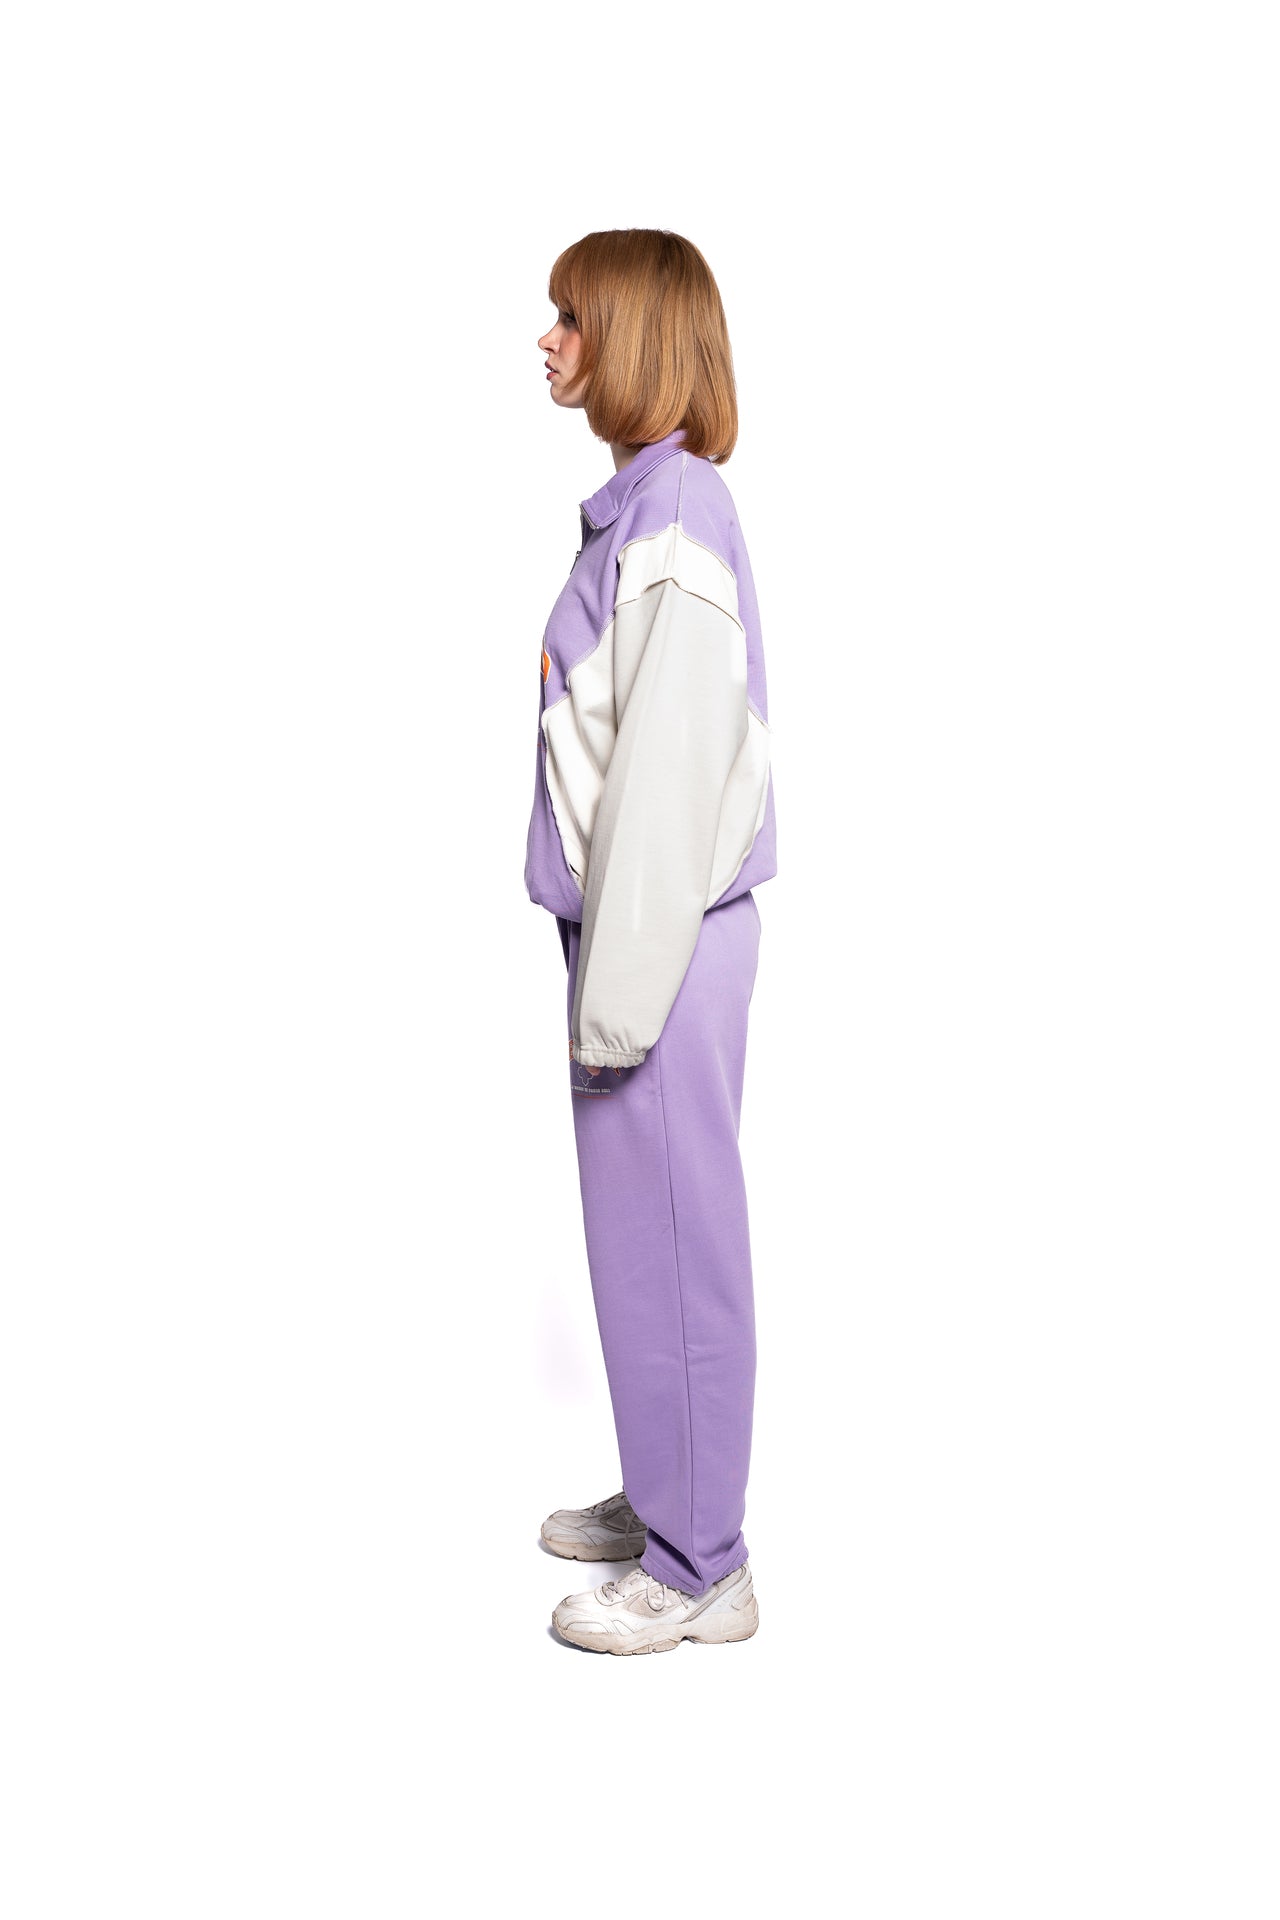 Seitenansicht des DeciderOutfits für Damen, lila Sweater gepaart mit passender Hose, stilvolle Farbkontraste, dargestellt von einem weiblichen Model.